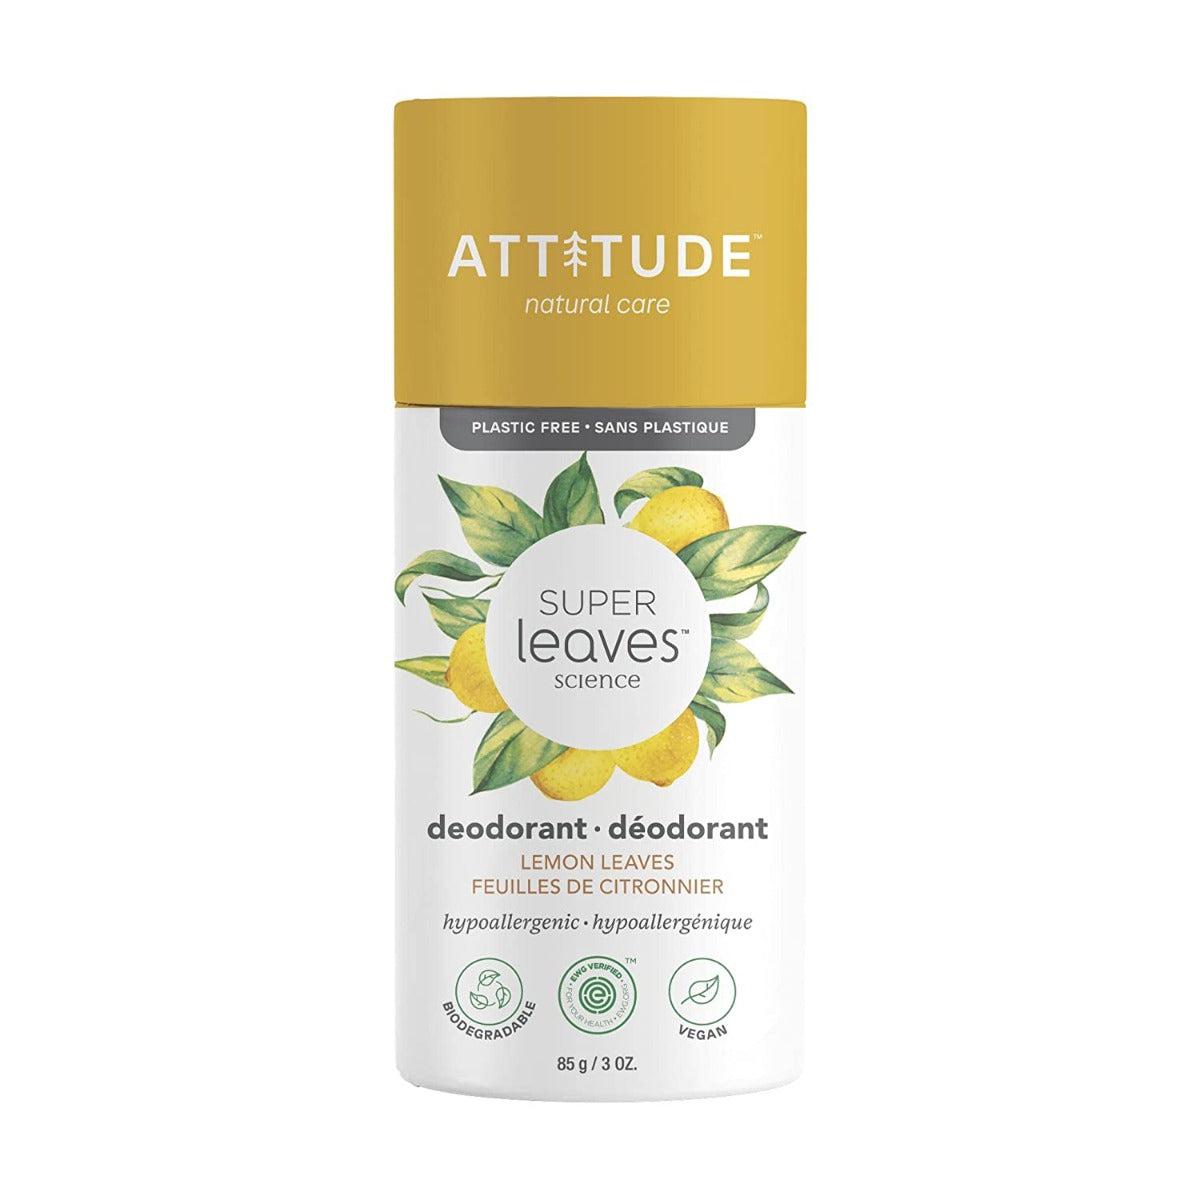 Attitude Super leaves Natural Deodorant Aluminium free - Lemon Leaves 85g